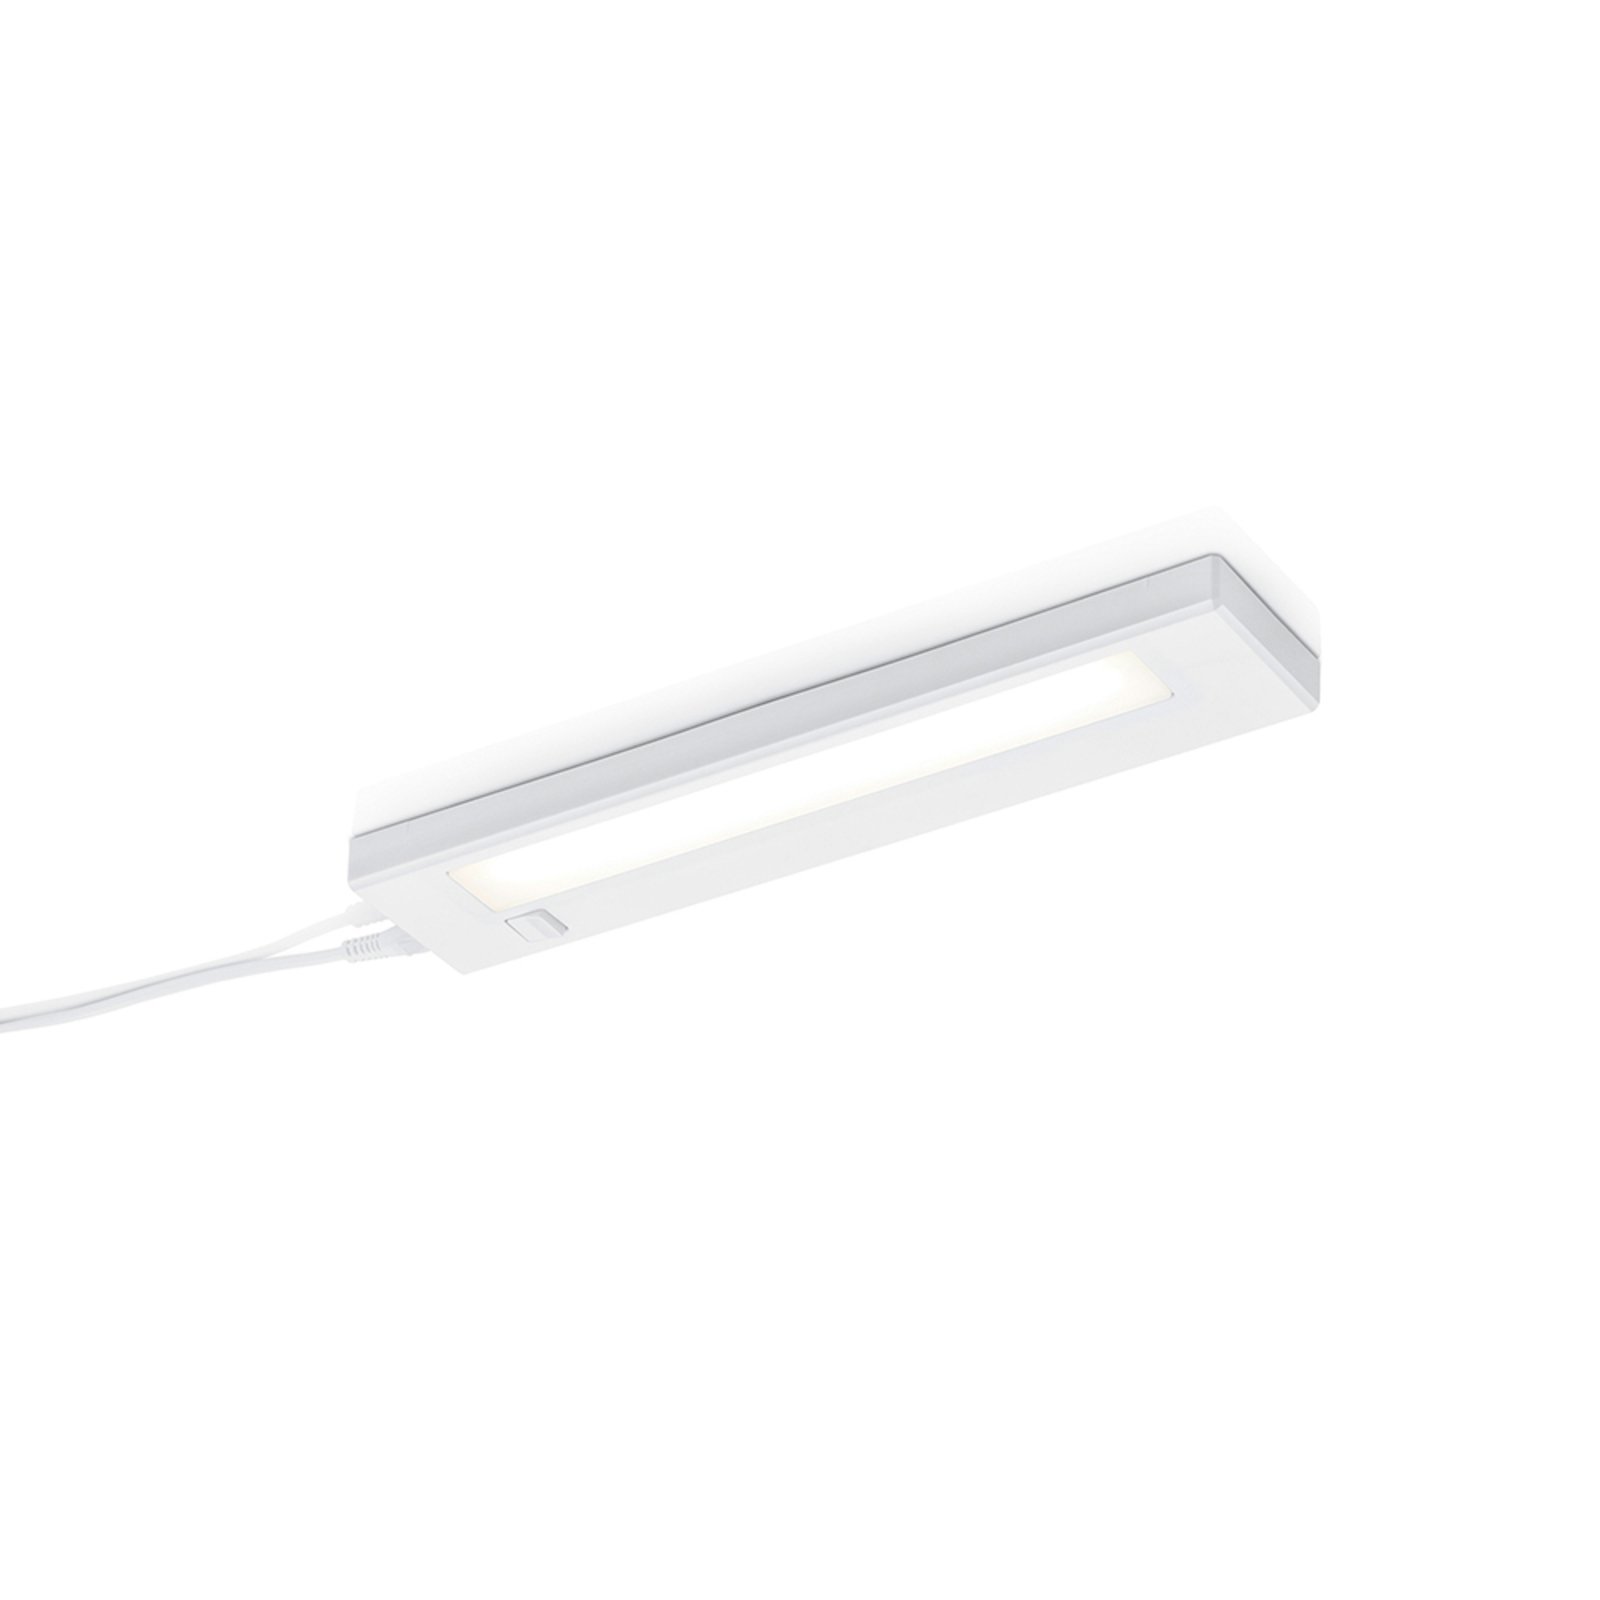 LED svetilo pod omarico Alino, belo, dolžina 34 cm